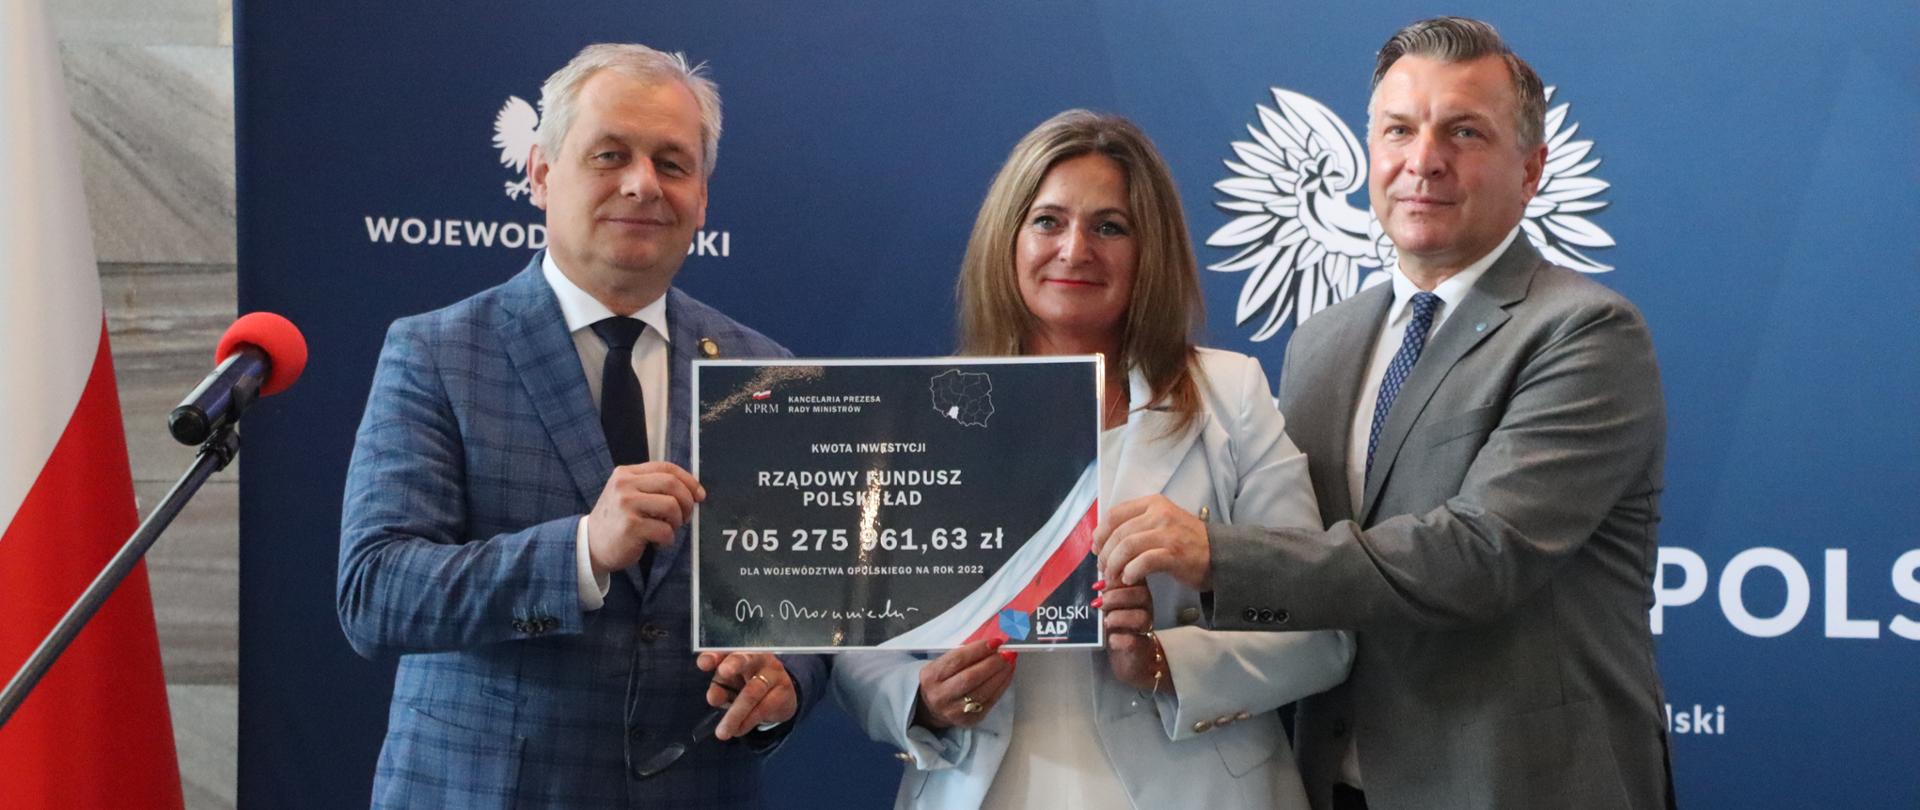 Na zdjęciu wojewoda opolski, poseł Czochara i pracownik Biura Wojewody, trzymają oni wydrukowany czek z kwotą 705 mln zł dla regionu. W tle ścianka z napisem Wojewoda Opolski. Po lewej stronie biało-czerwona flaga. 